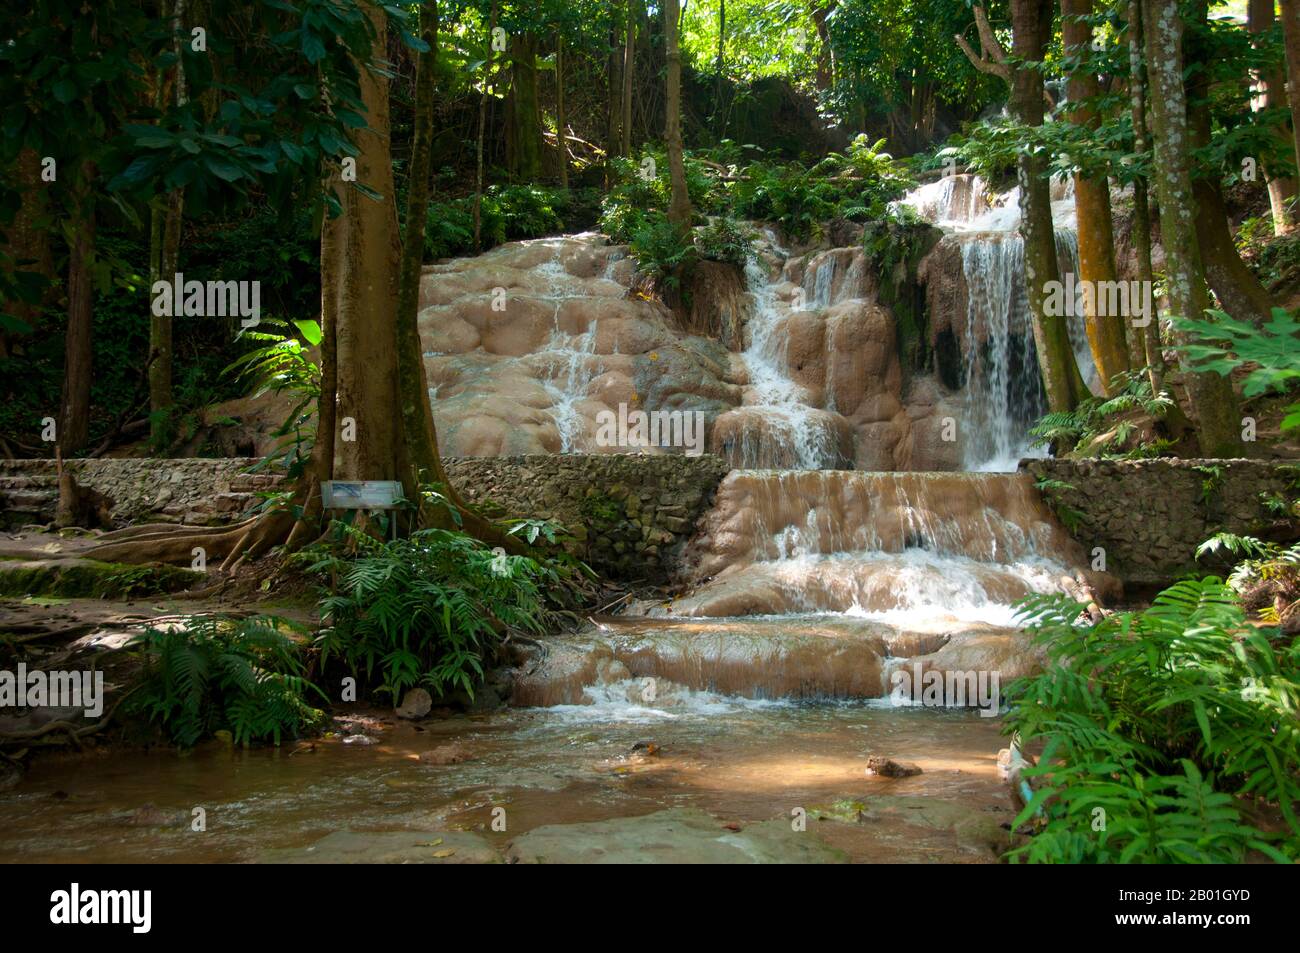 Thailand: Suan Hom Wasserfall in der Nähe von Suan hin Pha Ngam, Provinz Loei. Die Provinz Loei (Thai: เลย) befindet sich im oberen Nordosten Thailands. Die benachbarten Provinzen sind (von Osten nach rechts) Nong Khai, Udon Thani, Nongbua Lamphu, Khon Kaen, Phetchabun, Phitsanulok. Im Norden grenzt sie an die Provinzen Xaignabouli und Vientiane in Laos. Die Provinz ist von niedrigen Bergen bedeckt, während die Hauptstadt Loei in einem fruchtbaren Becken liegt. Der Fluss Loei, der durch die Provinz fließt, ist ein Nebenfluss des Mekong, der zusammen mit dem kleineren Fluss Hueang die nördliche Grenze der Provinz bildet. Stockfoto